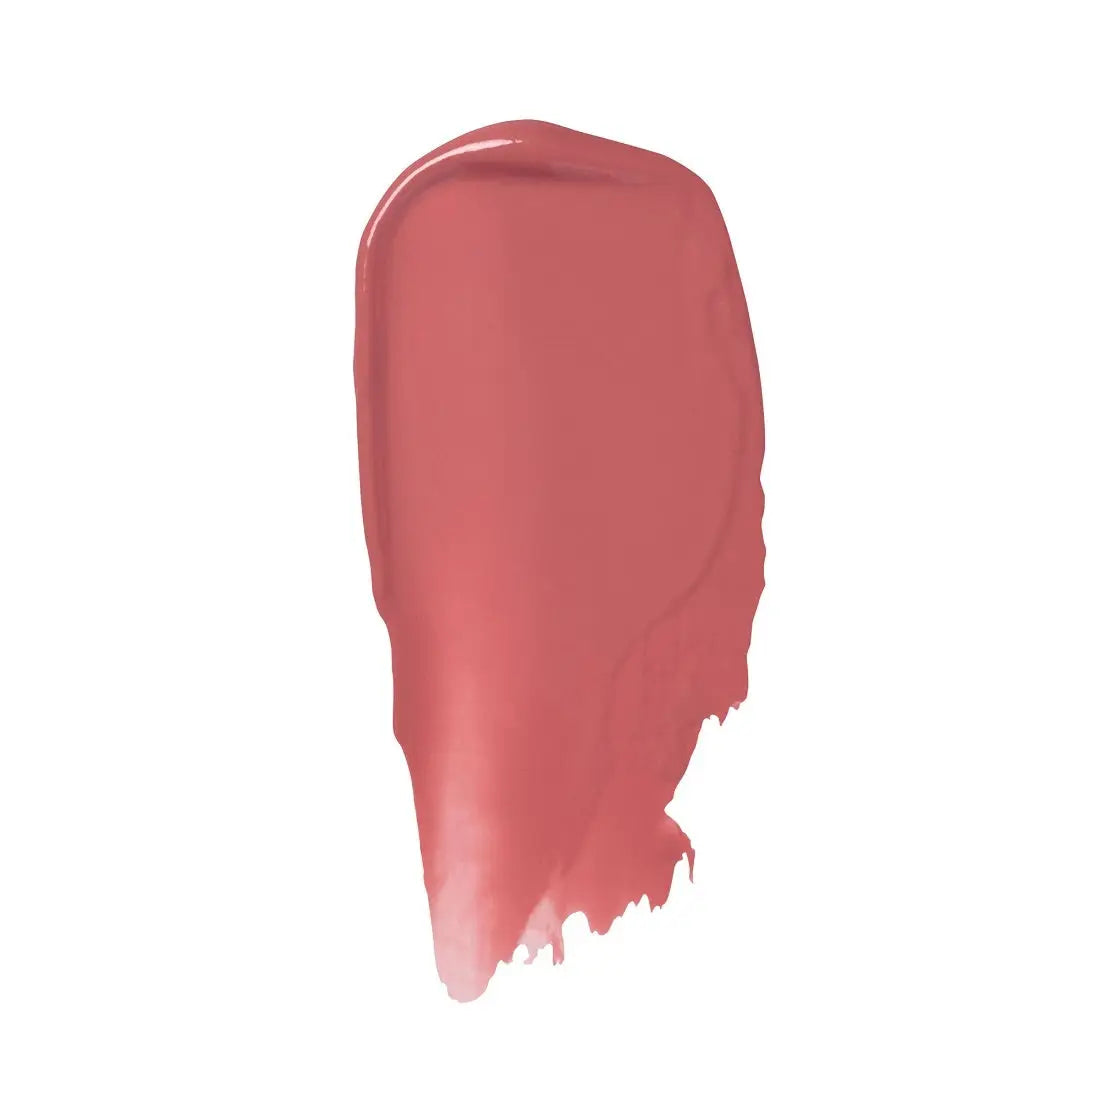 Ilia Beauty Colour Haze Multi-Matte Pigment 7ml - Temptation